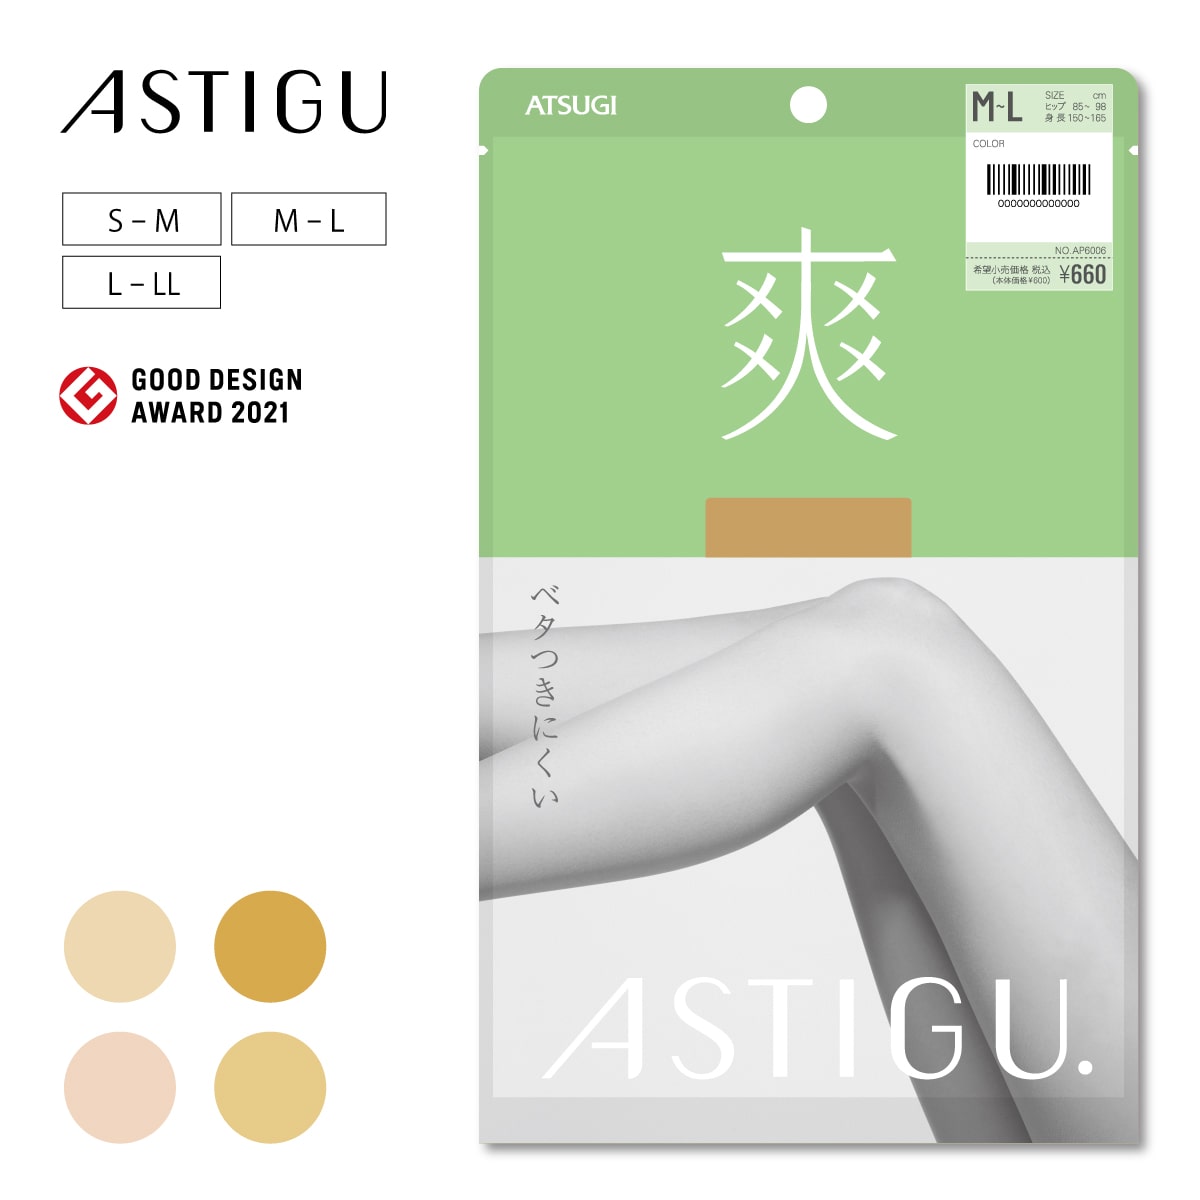 ASTIGU【爽】ベタつきにくい ストッキング